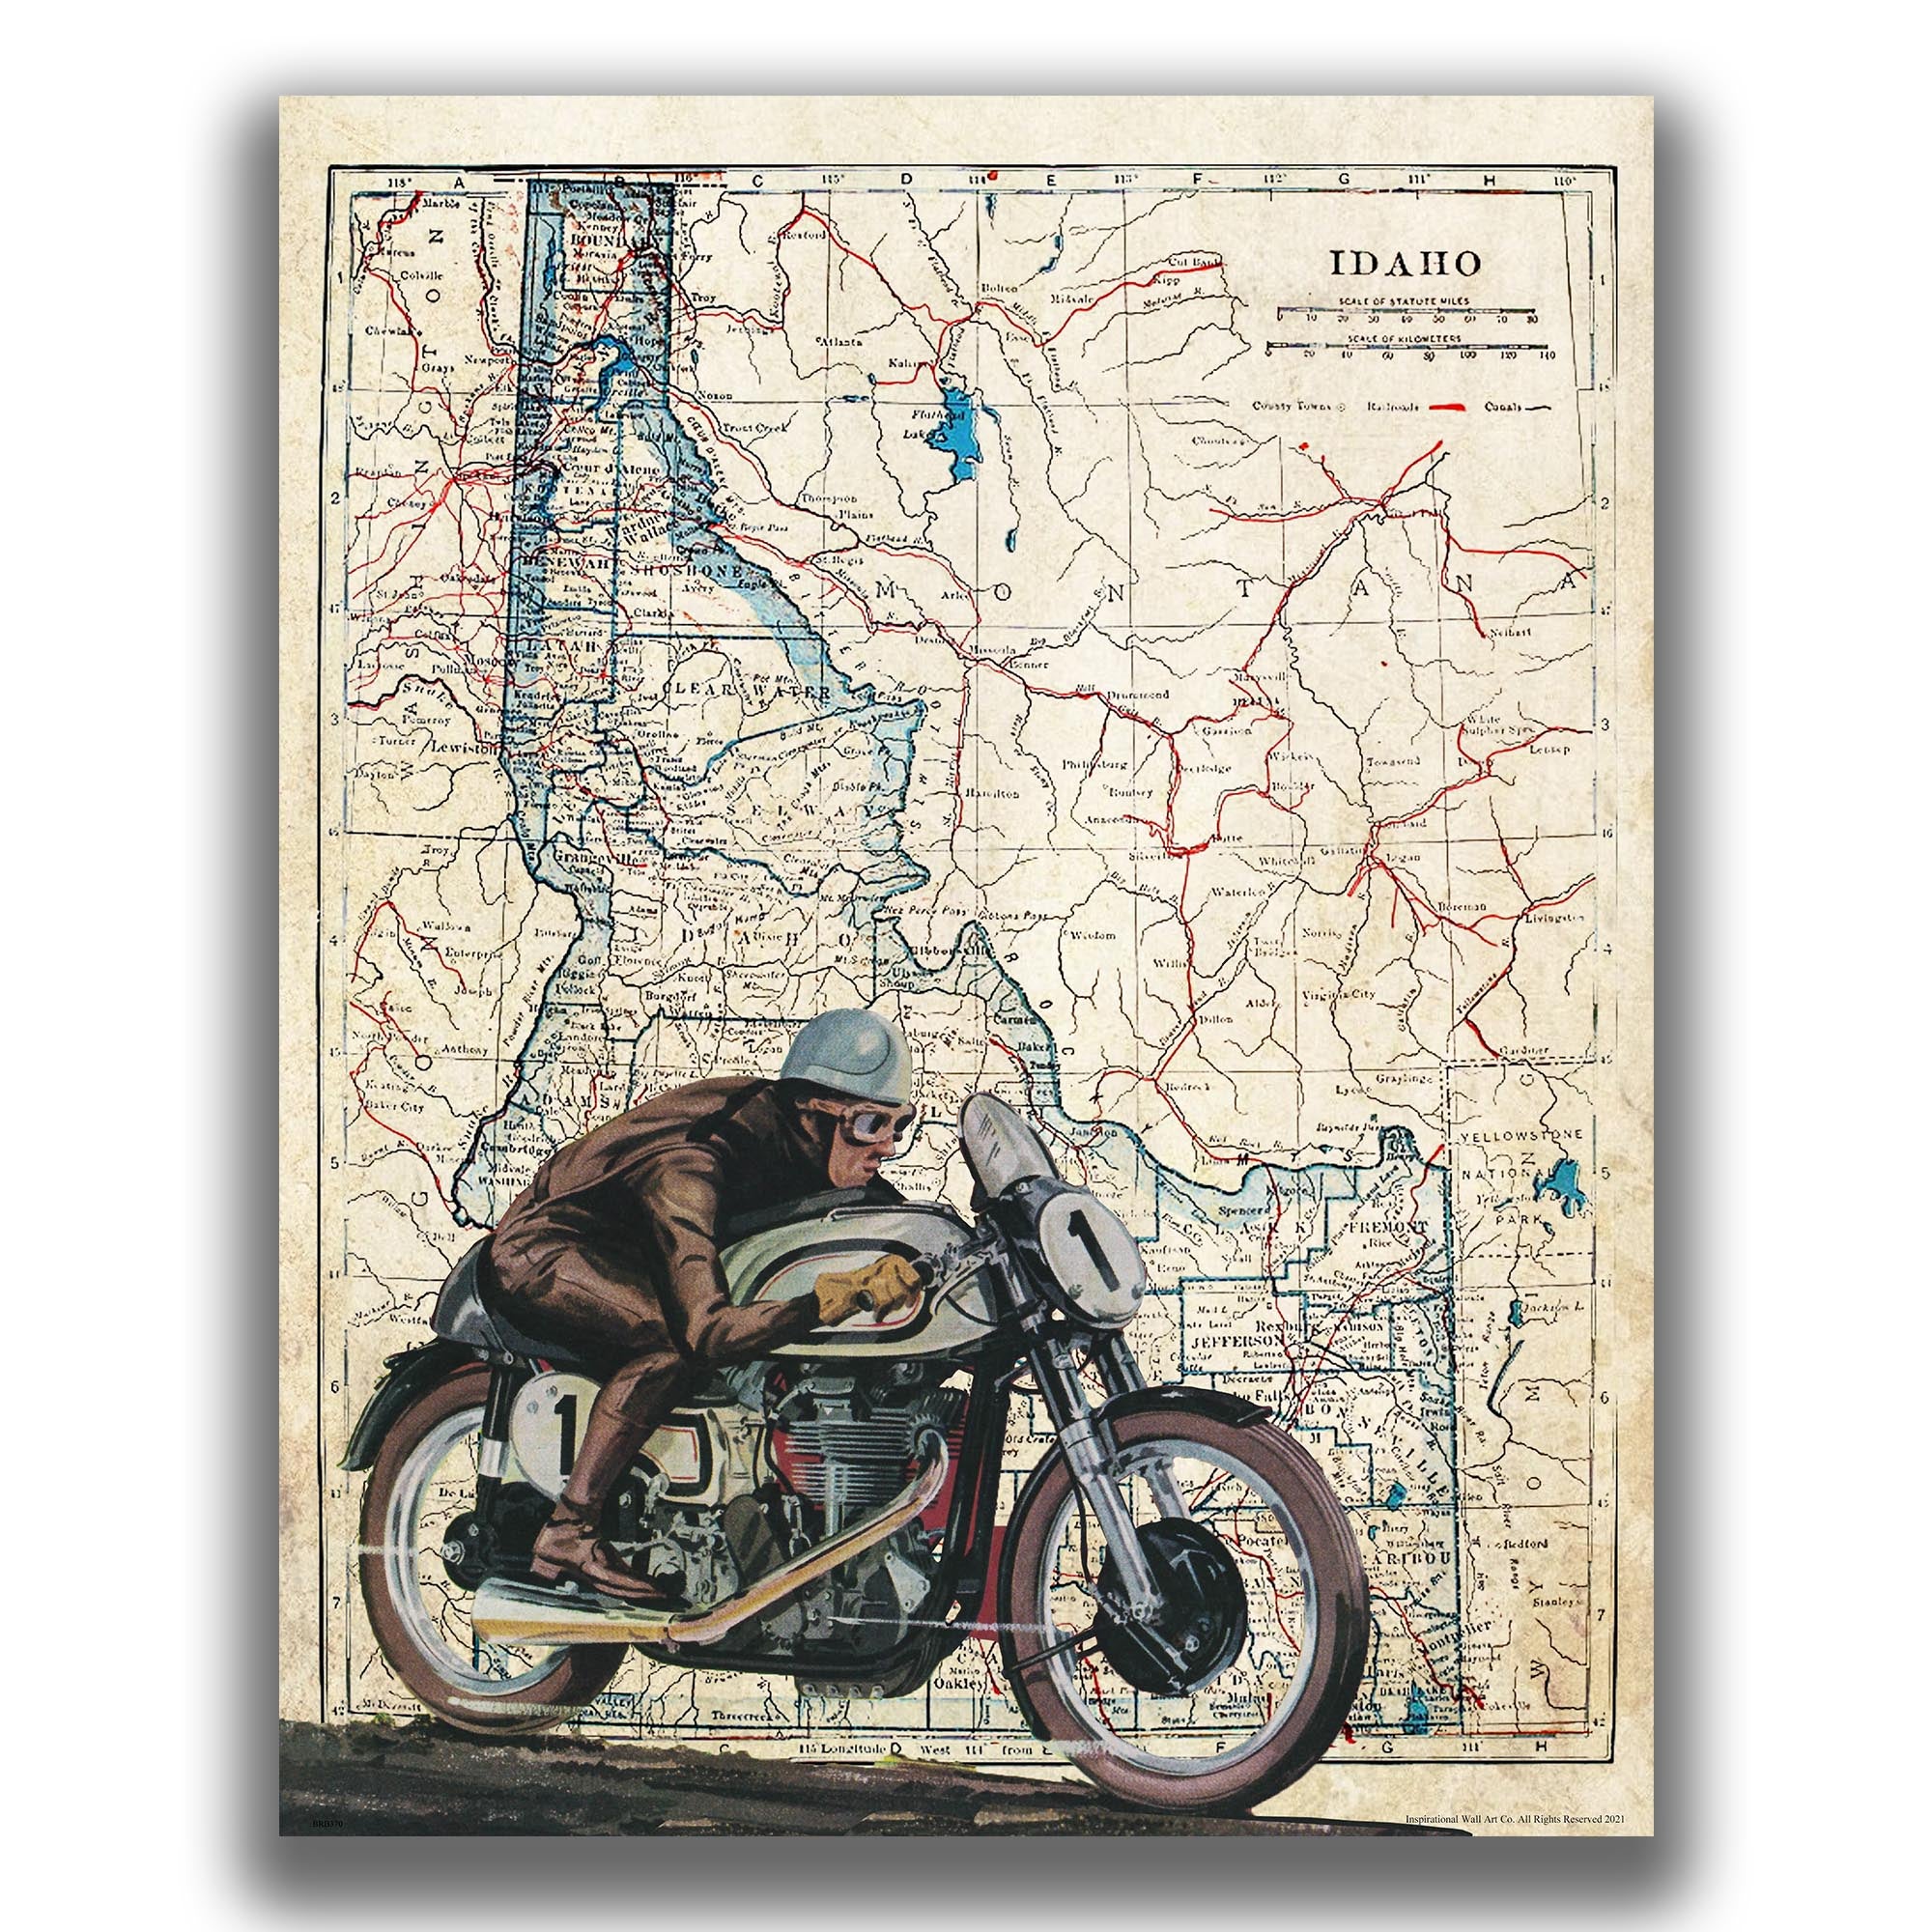 Idaho - Motorcycle Poster